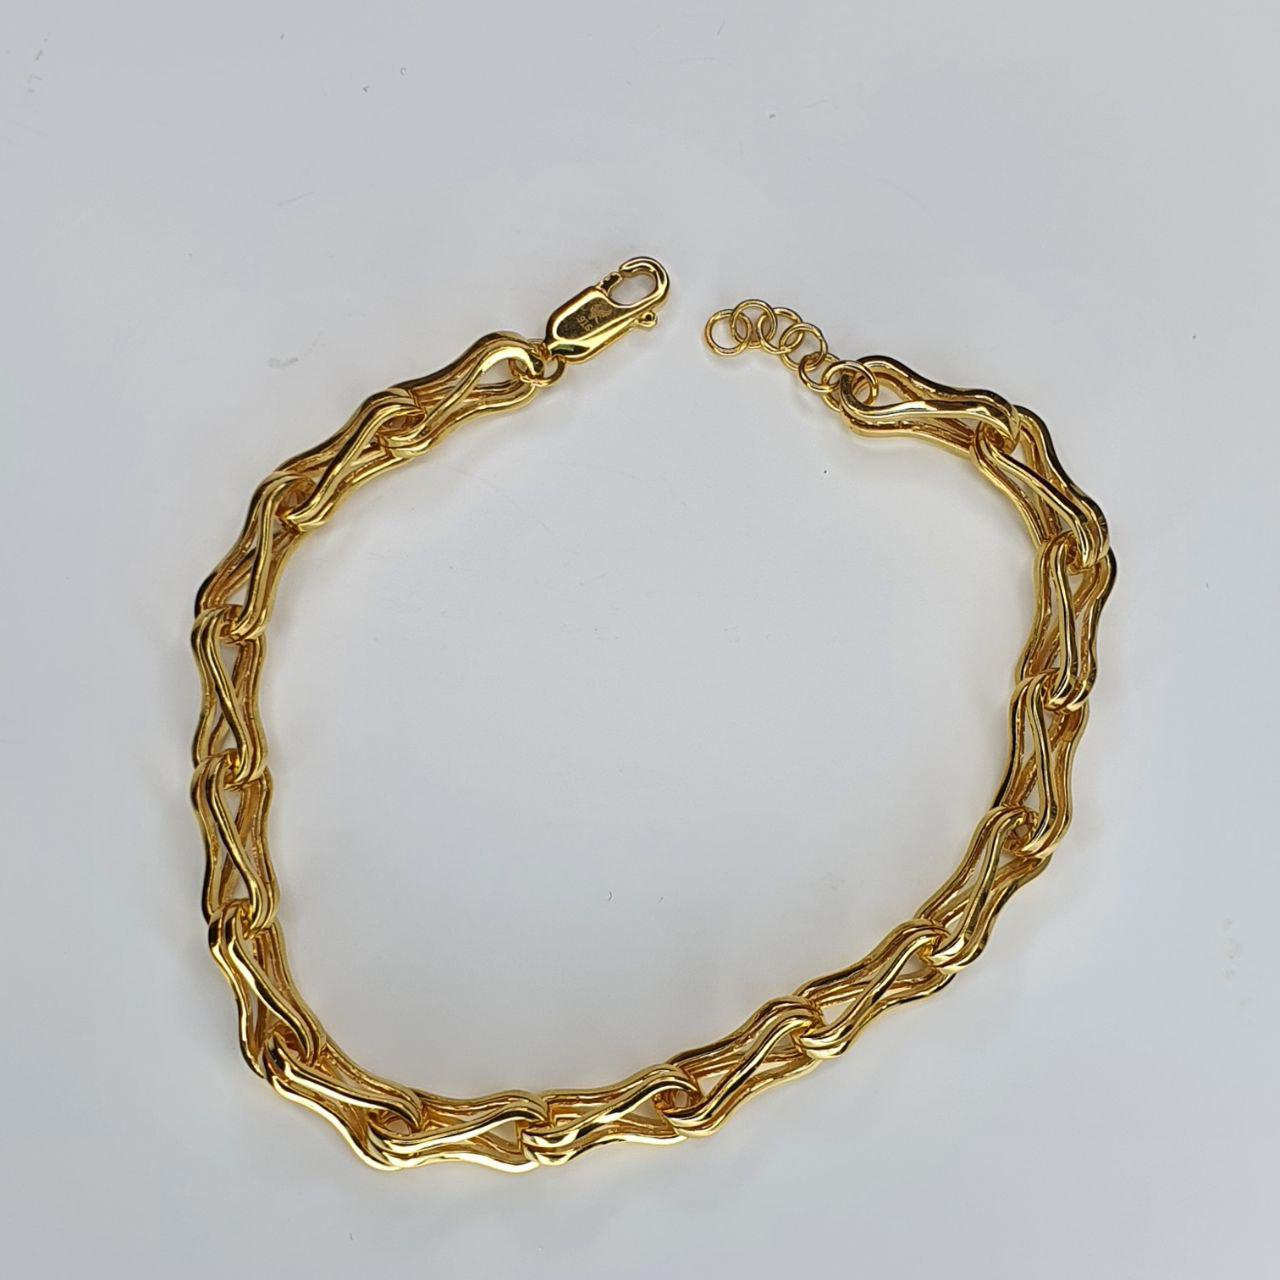 22k / 916 Gold Double Link Bracelet v5-916 gold-Best Gold Shop